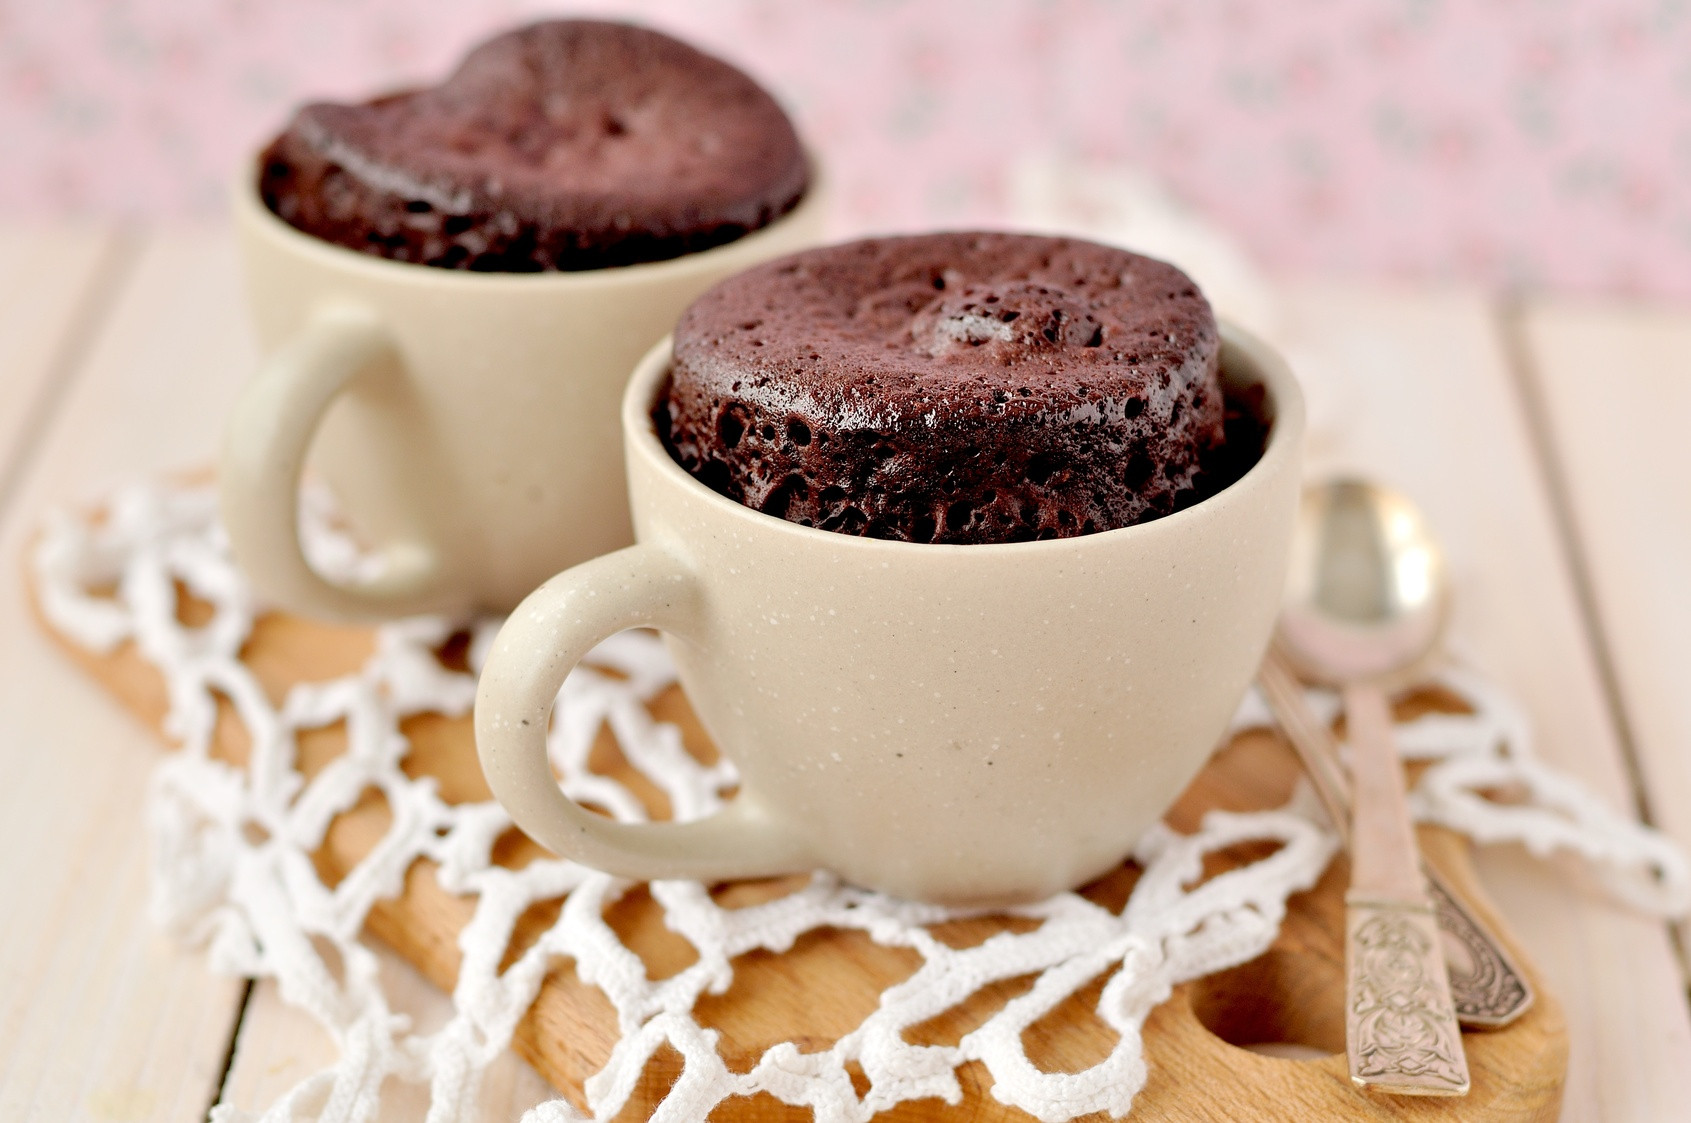 Tassen Kuchen
 Ten delicious chocolate desserts which you can make in